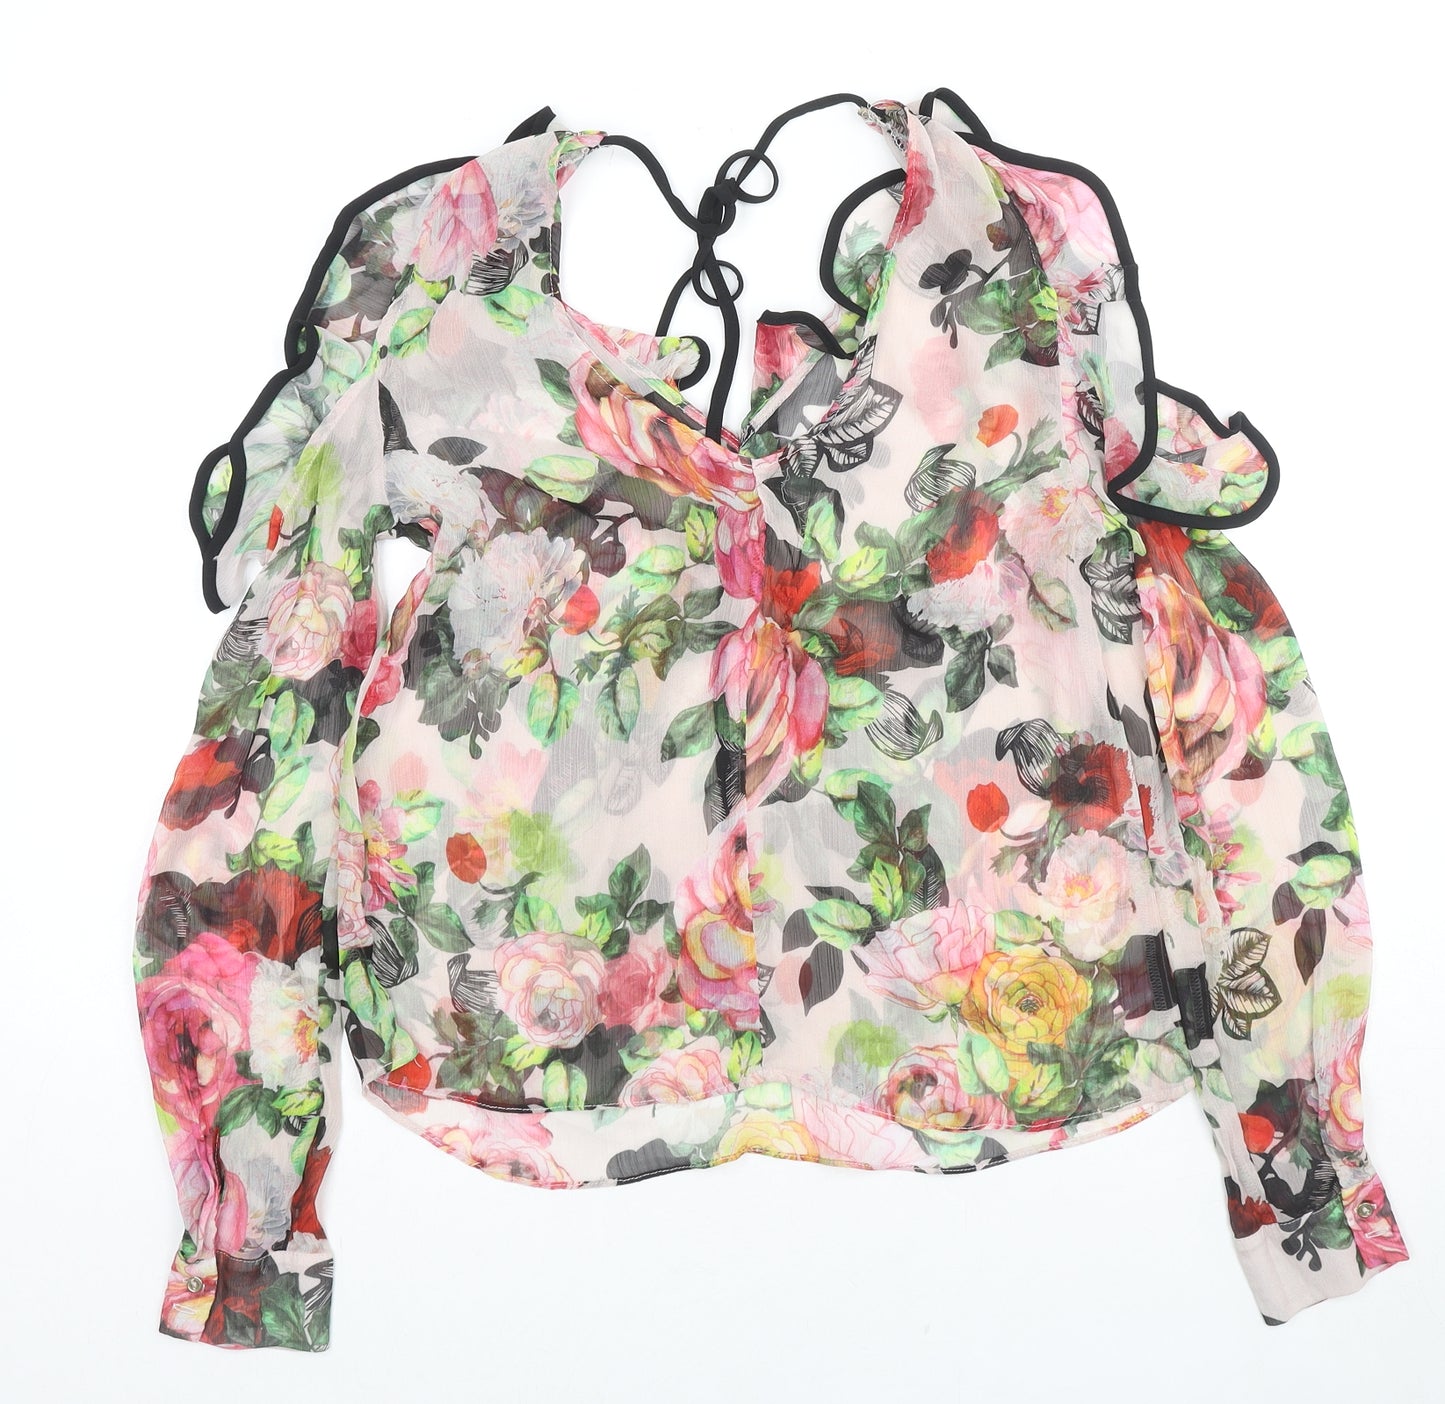 River Island Womens Multicoloured Floral Polyester Basic Blouse Size 12 V-Neck - Cold Shoulder